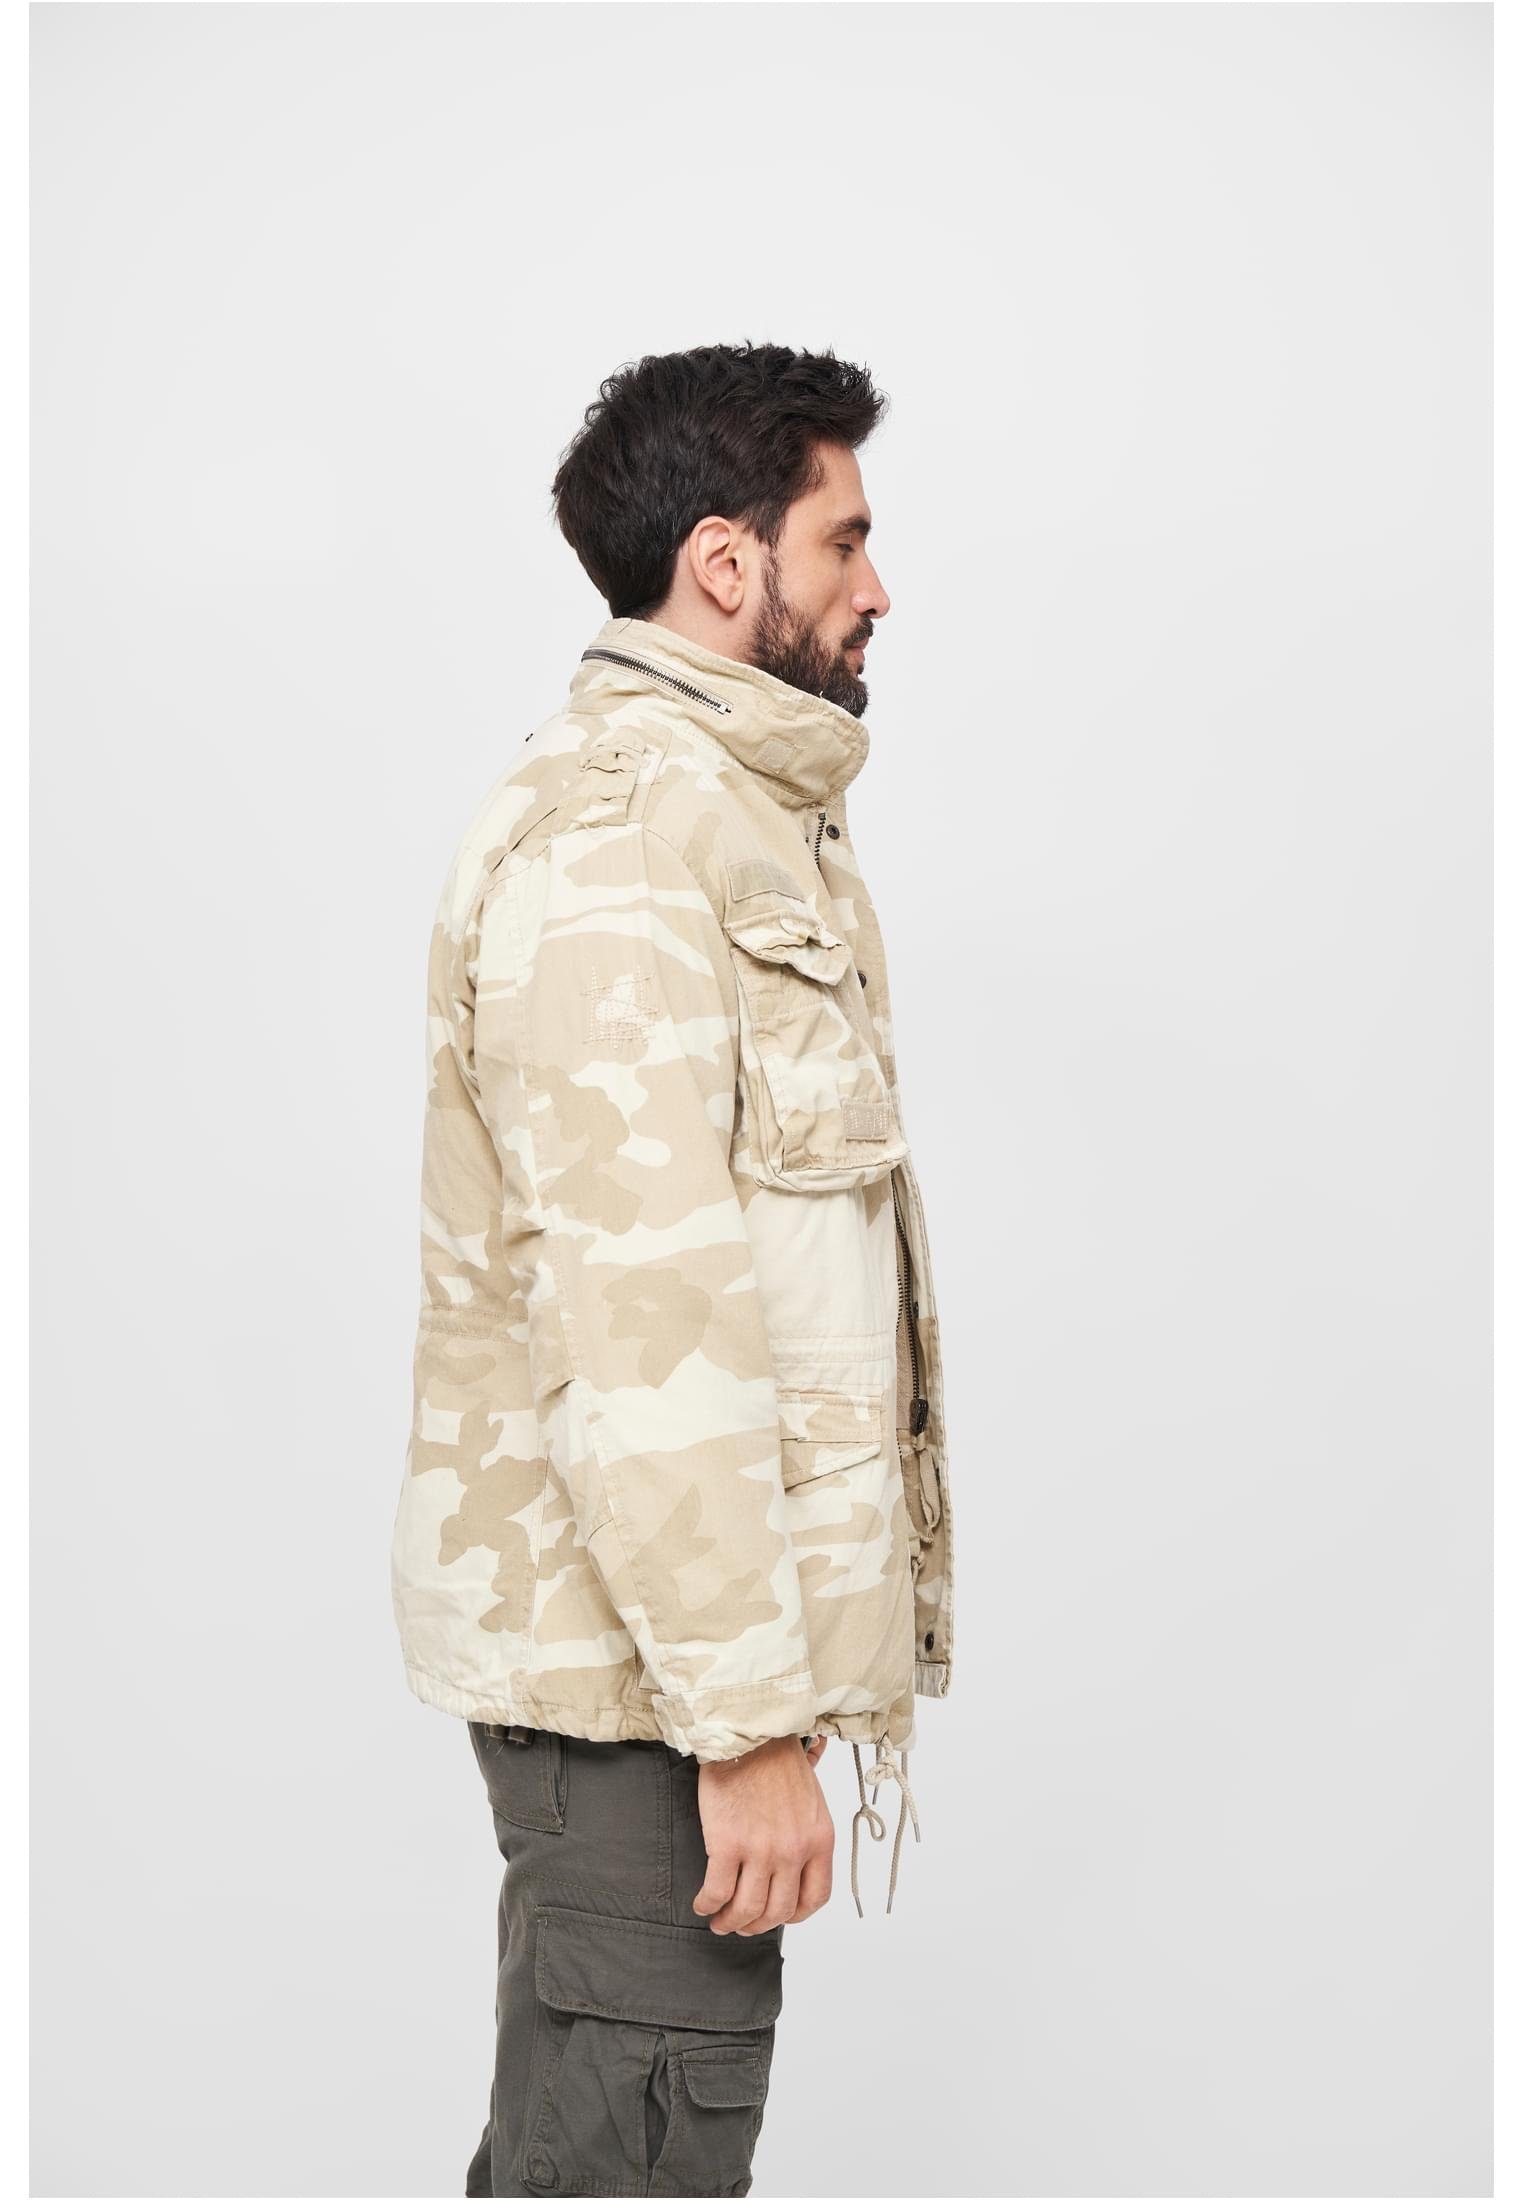 Brandit Giant Wintermantel Jacket Herren sand camouflage M-65